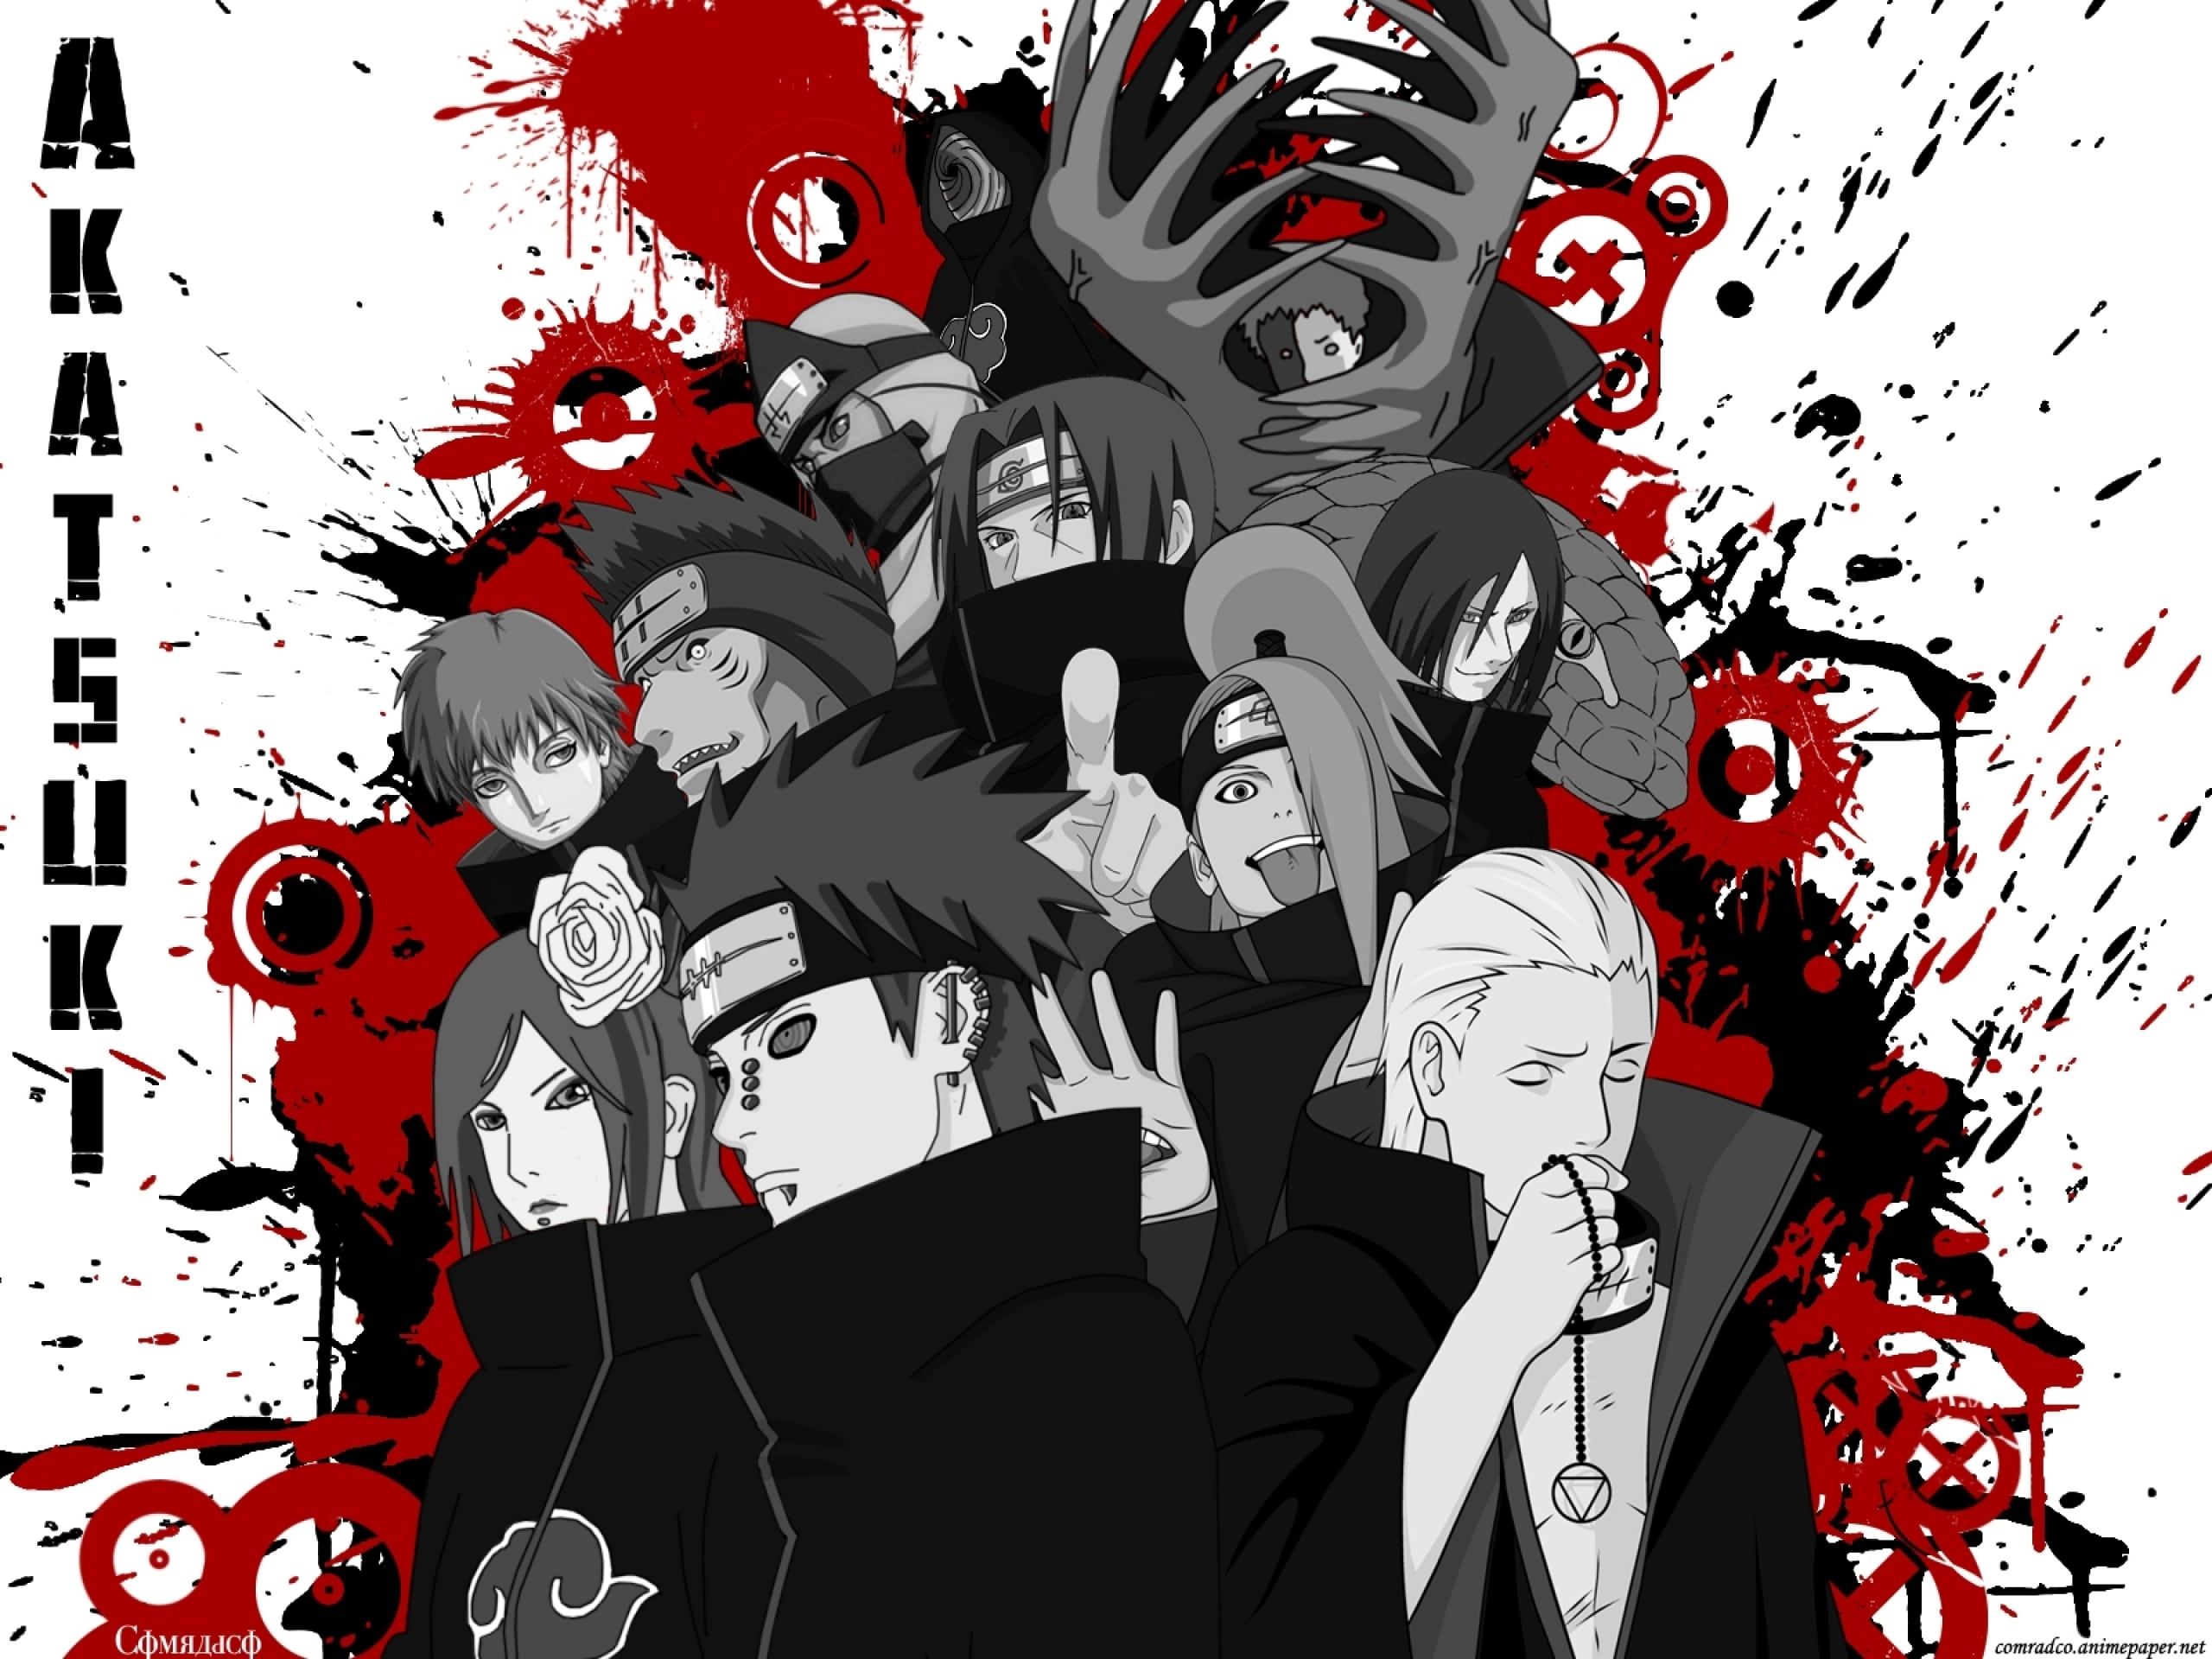 Akatsuki. Naruto wallpaper, Anime wallpaper, Akatsuki